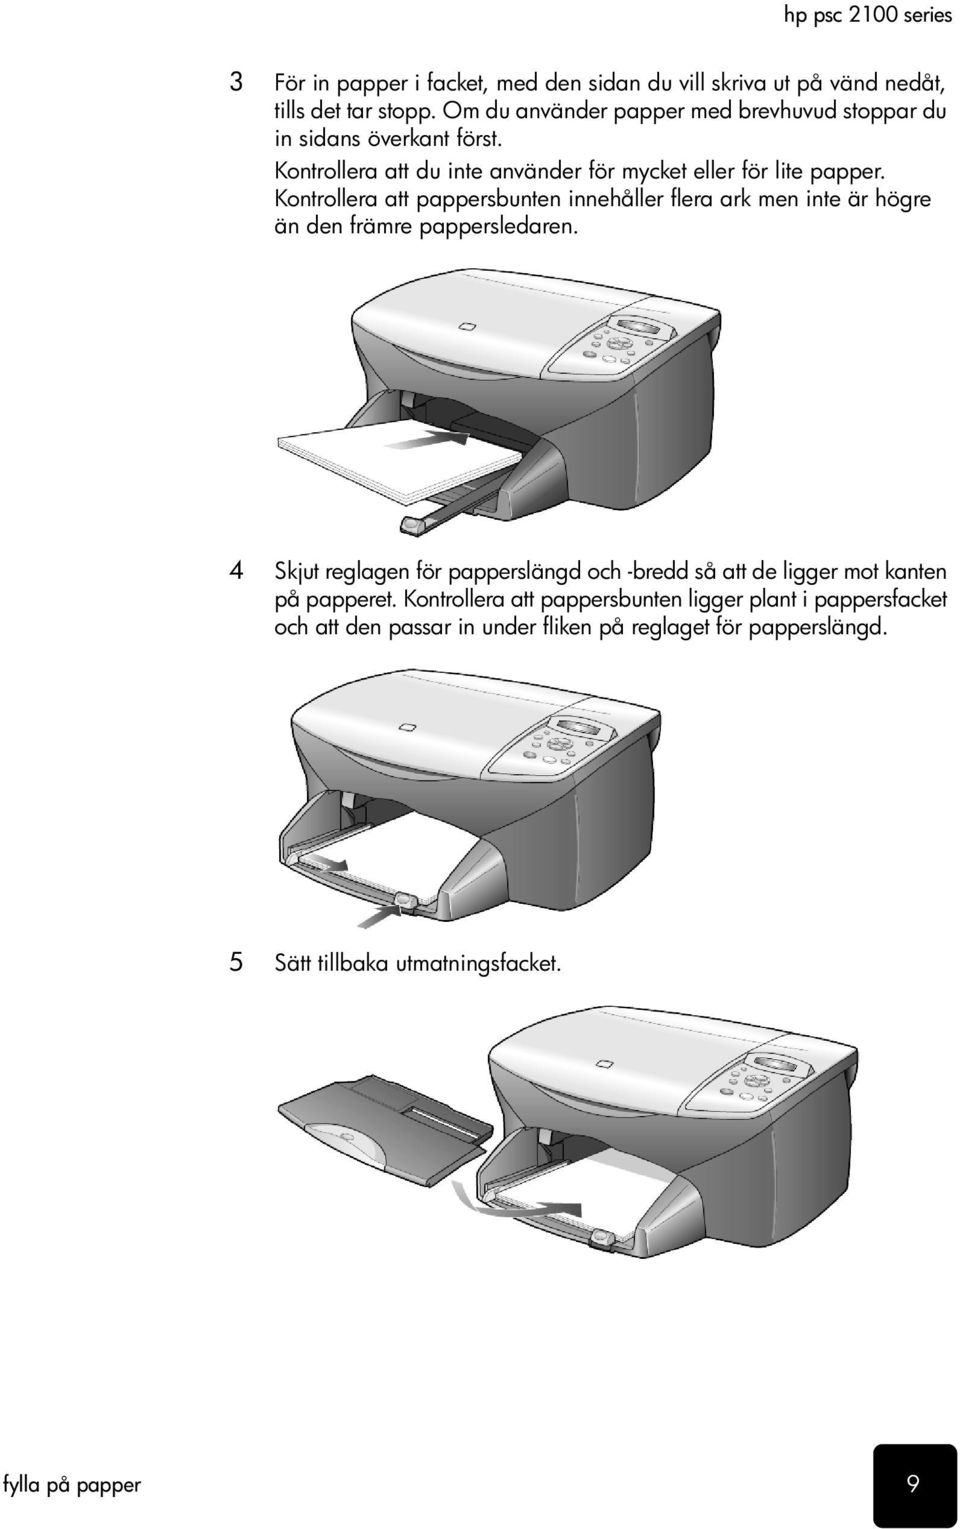 Kontrollera att pappersbunten innehåller flera ark men inte är högre än den främre pappersledaren.